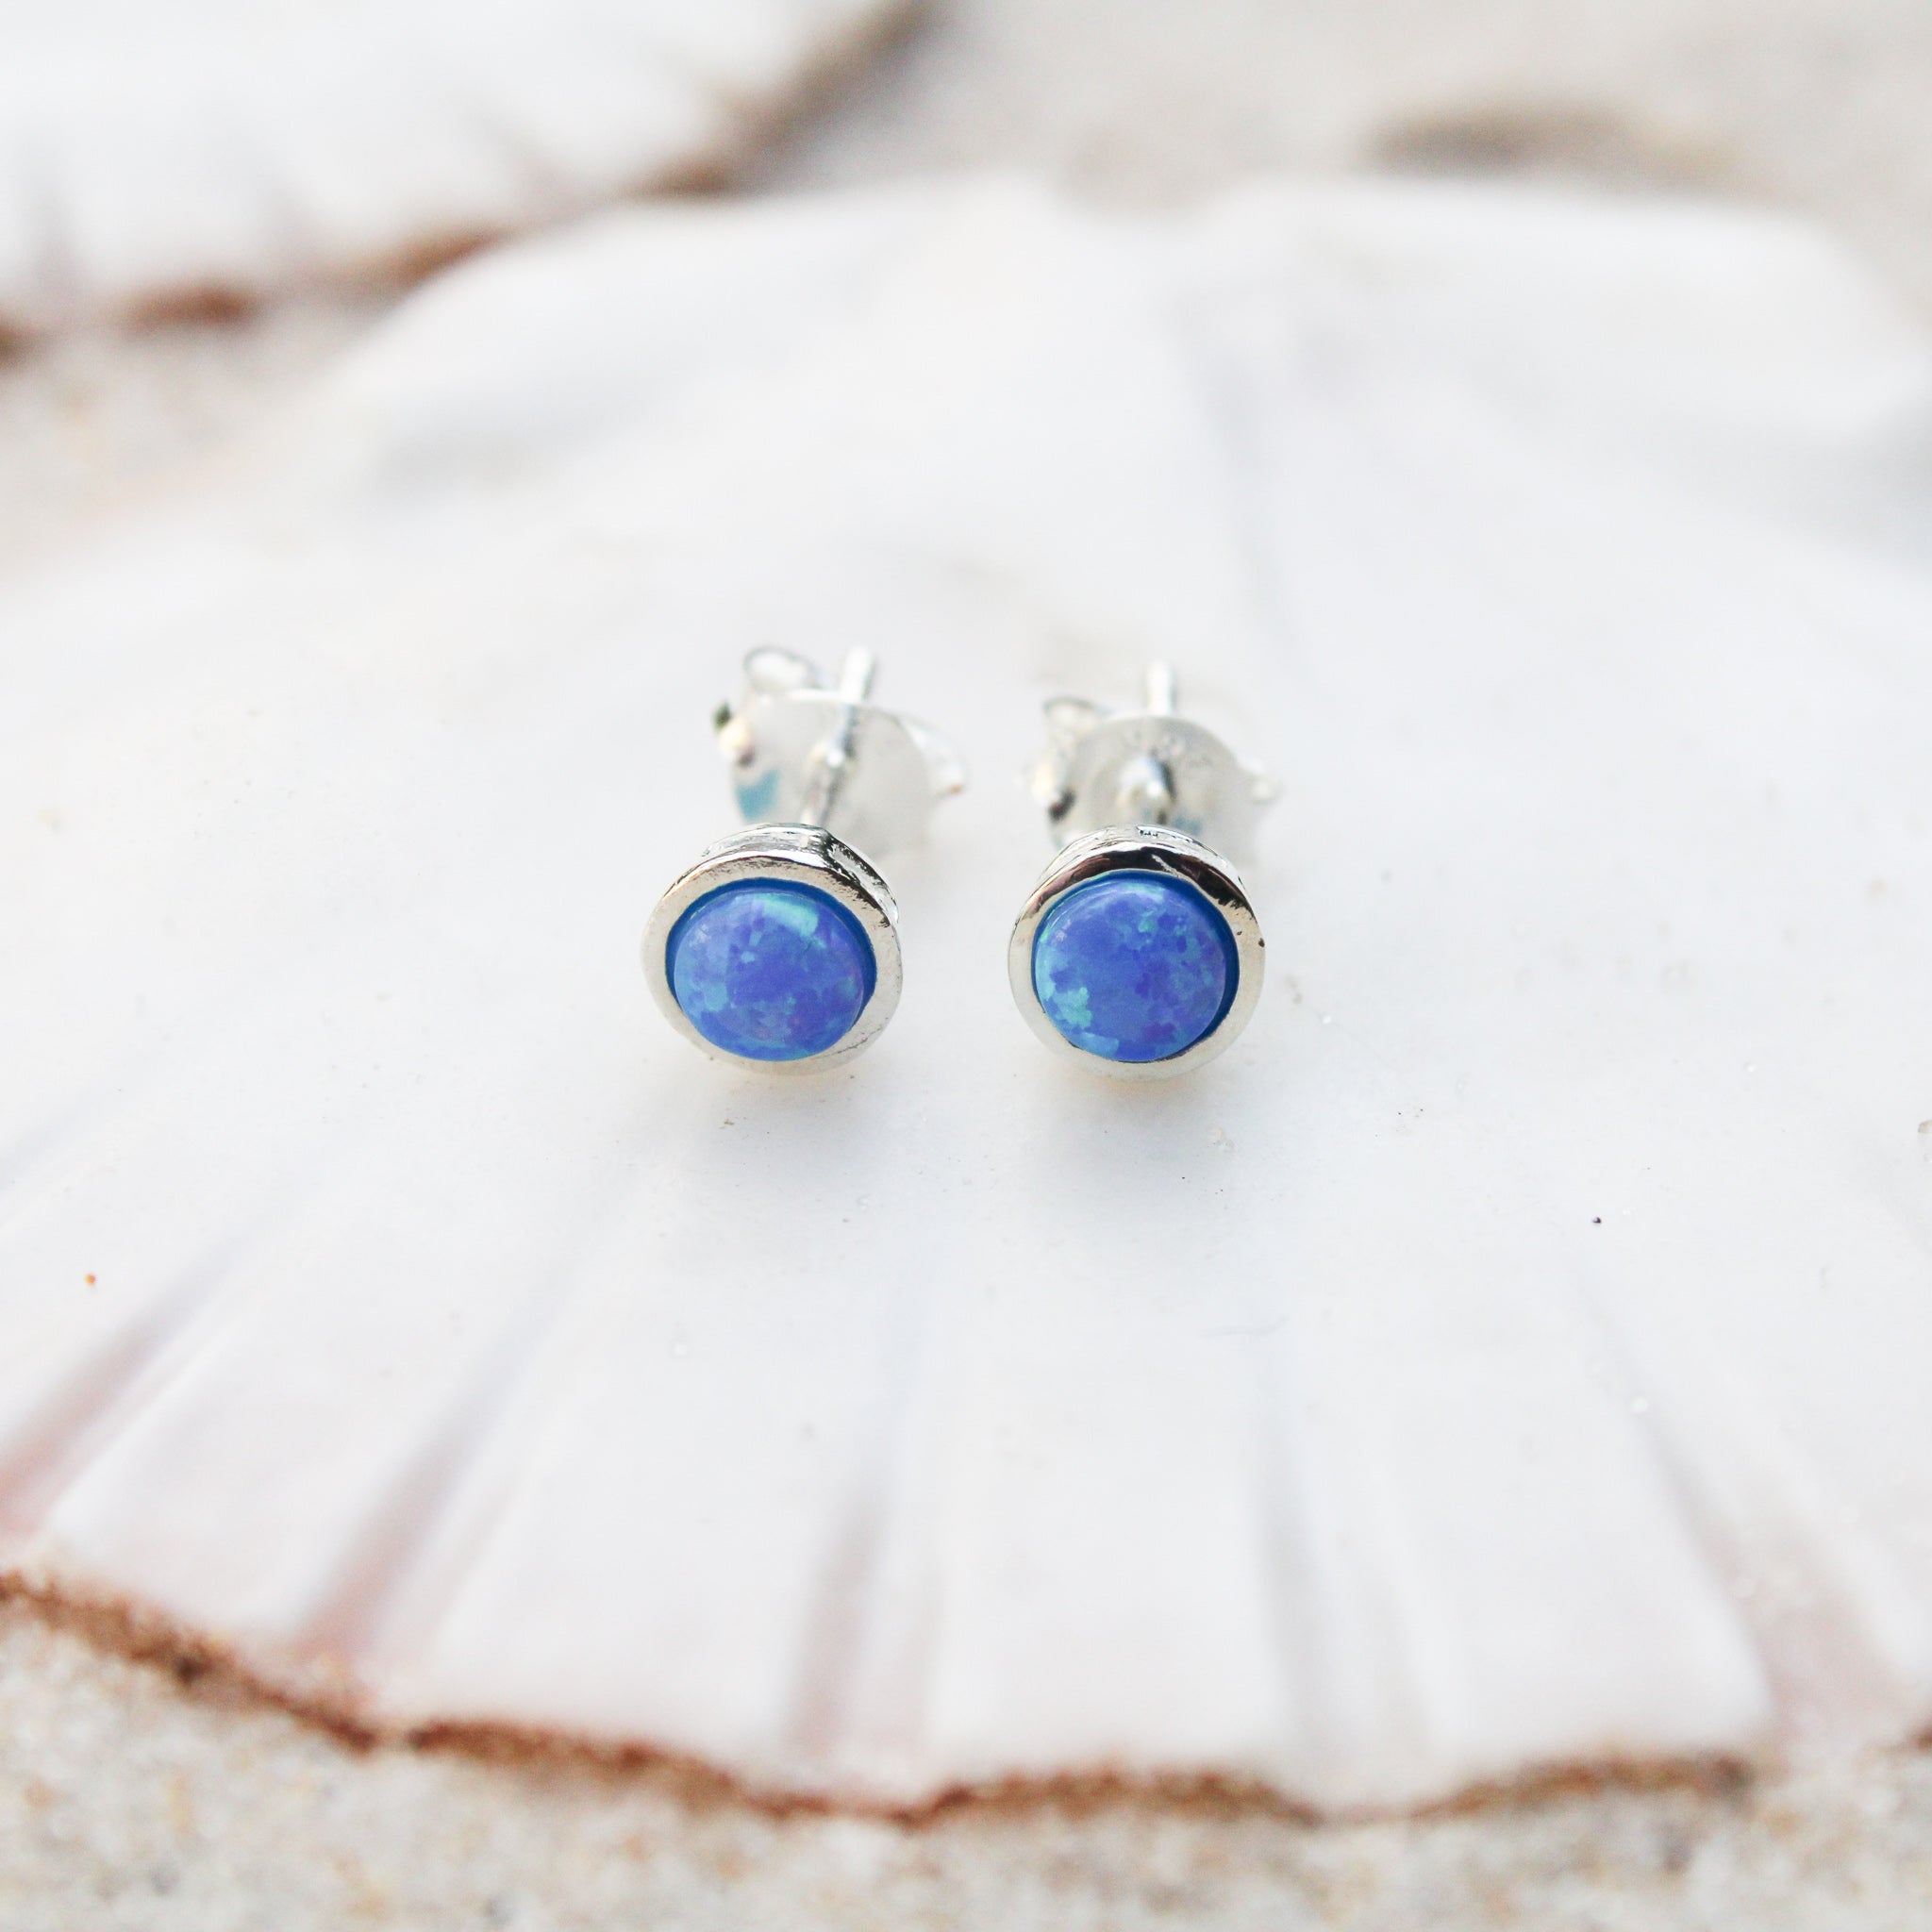 Blue opal stud earrings